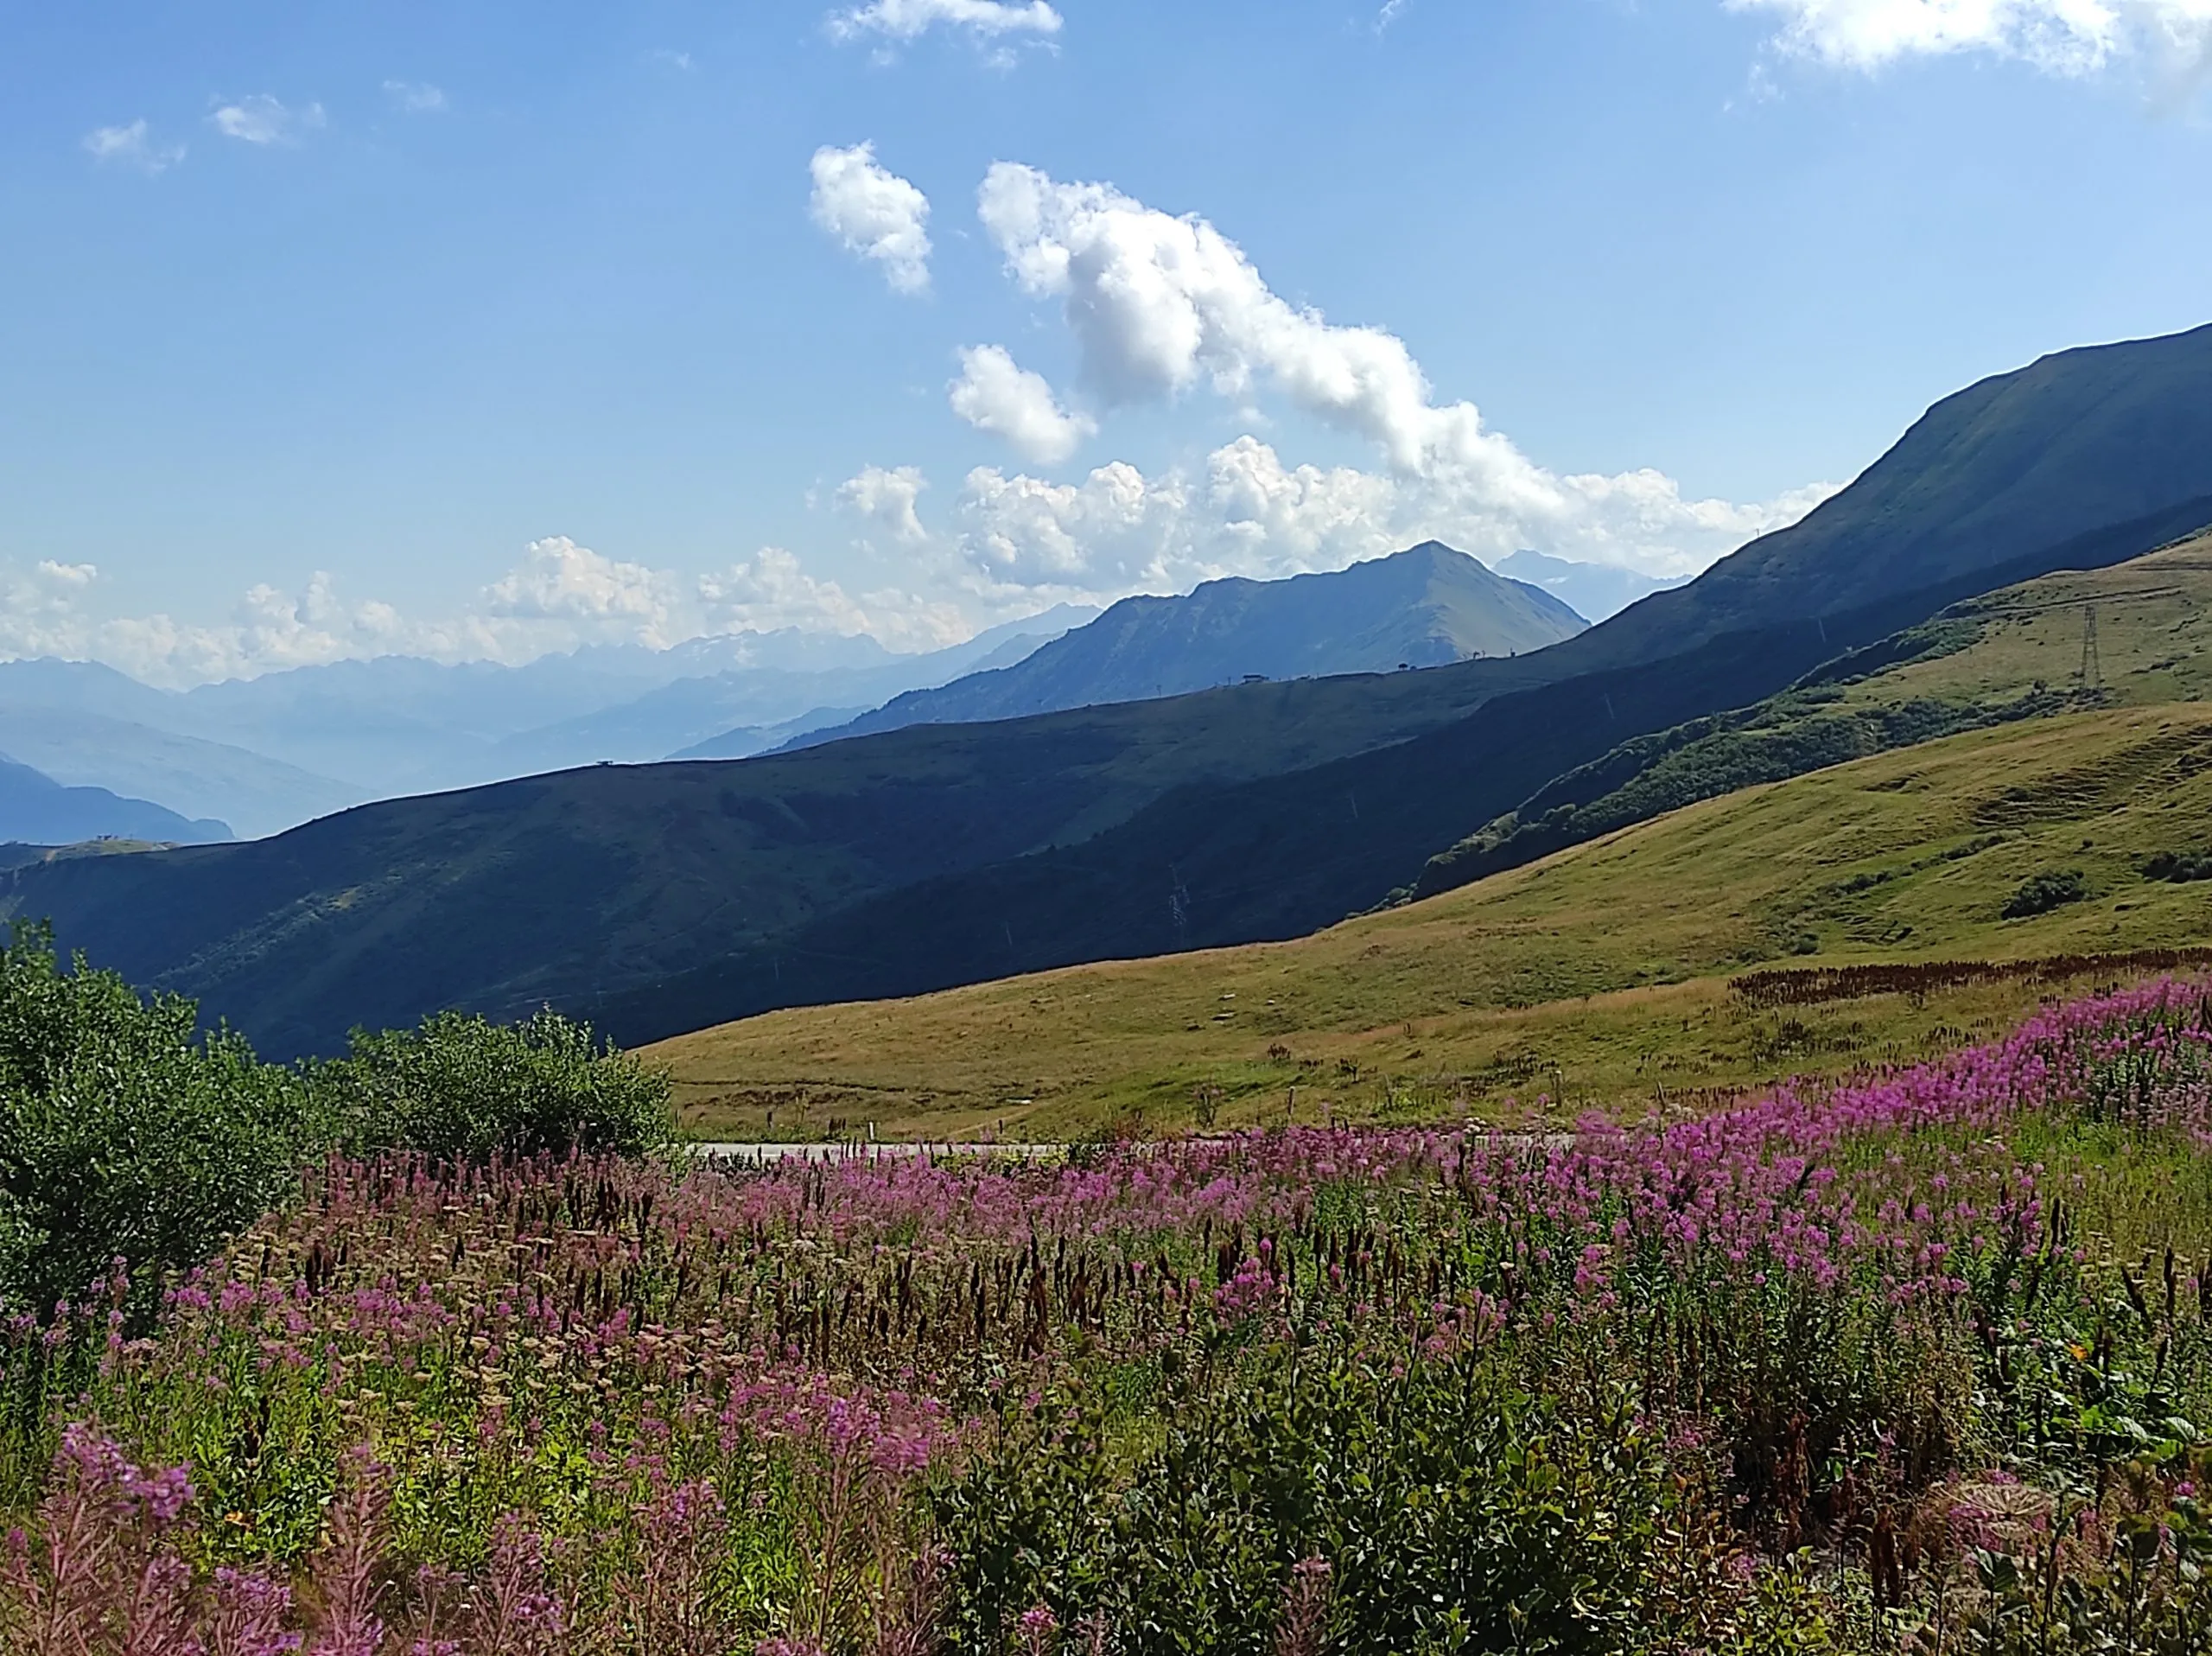 Flowers and view on Massif de la Maurienne from Col du Glandon, Saint-Colomban-des-Villards, Savoie, France